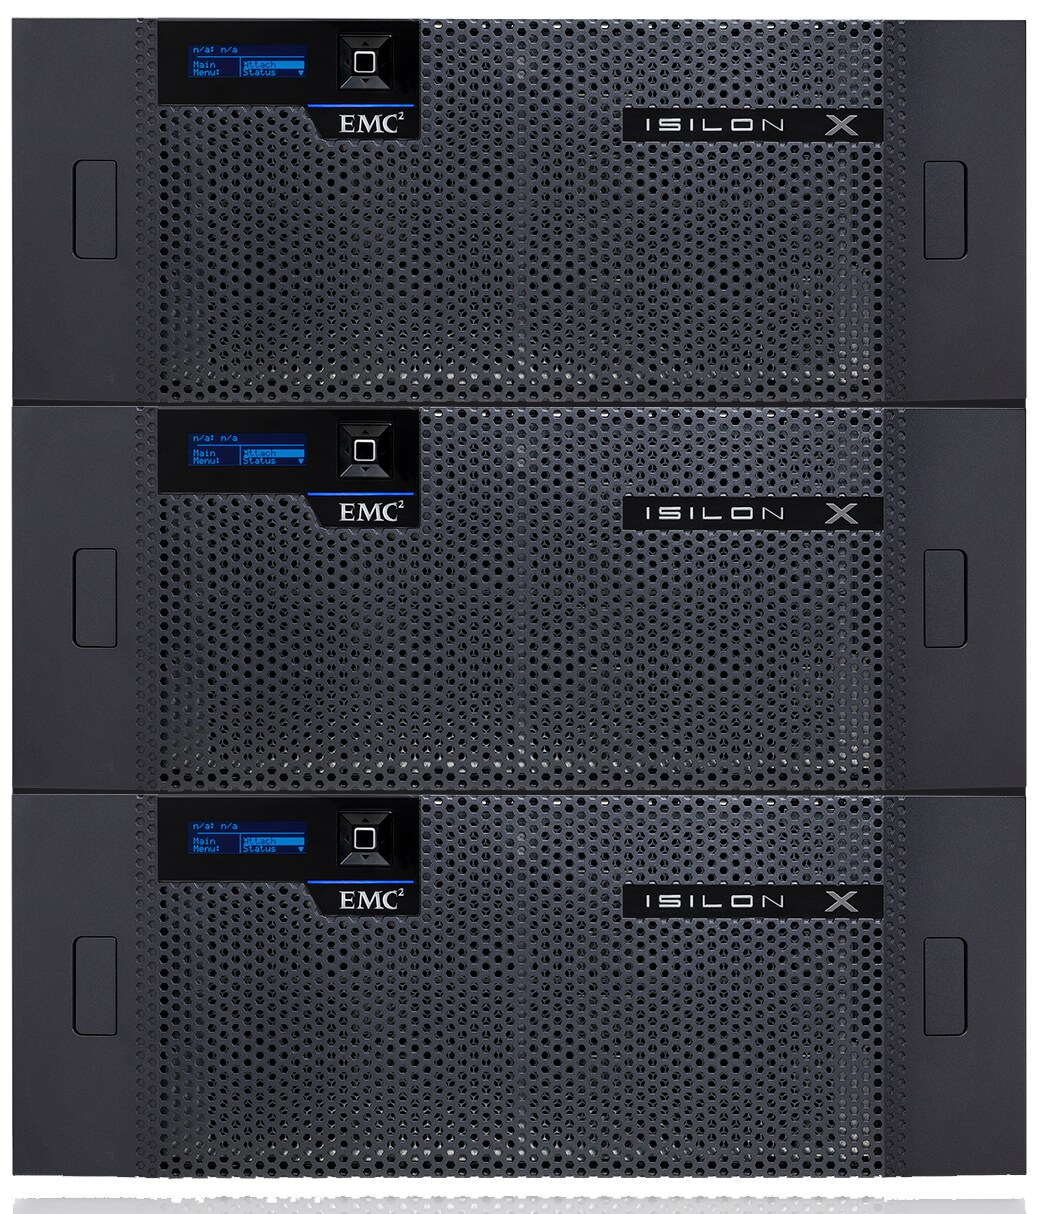 Dell EMC Isilon X410 - NAS server - 69.6 TB